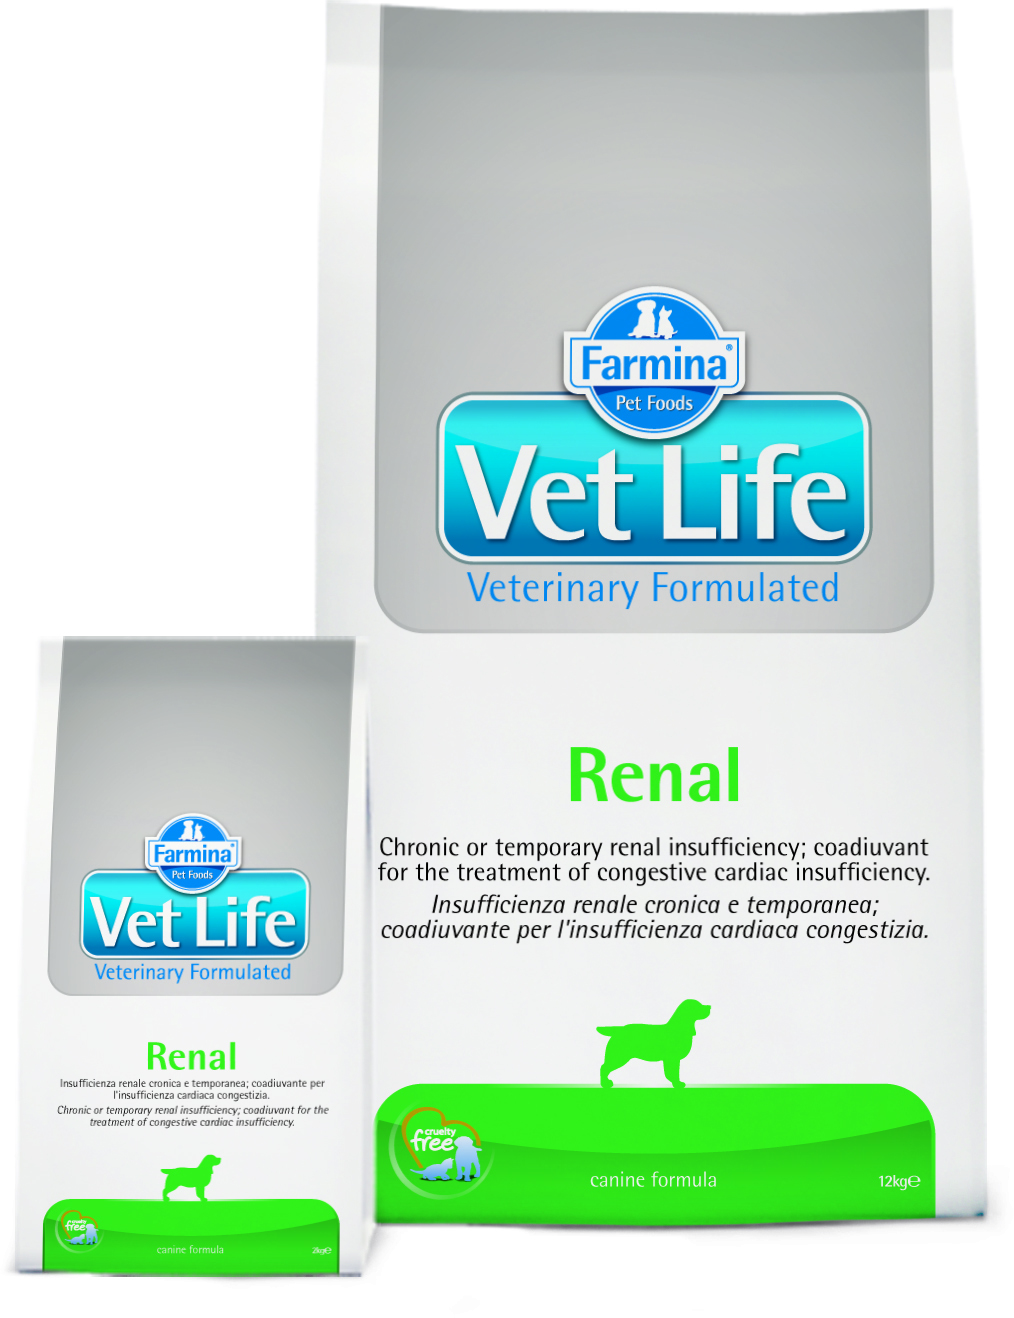 Farmina vet life 12 кг. Farmina vet Life Dog renal 2 кг. Farmina vet Life renal. Сухой корм для собак Farmina vet Life renal, при заболеваниях почек 2 кг. Vet Life корм renal для собак.